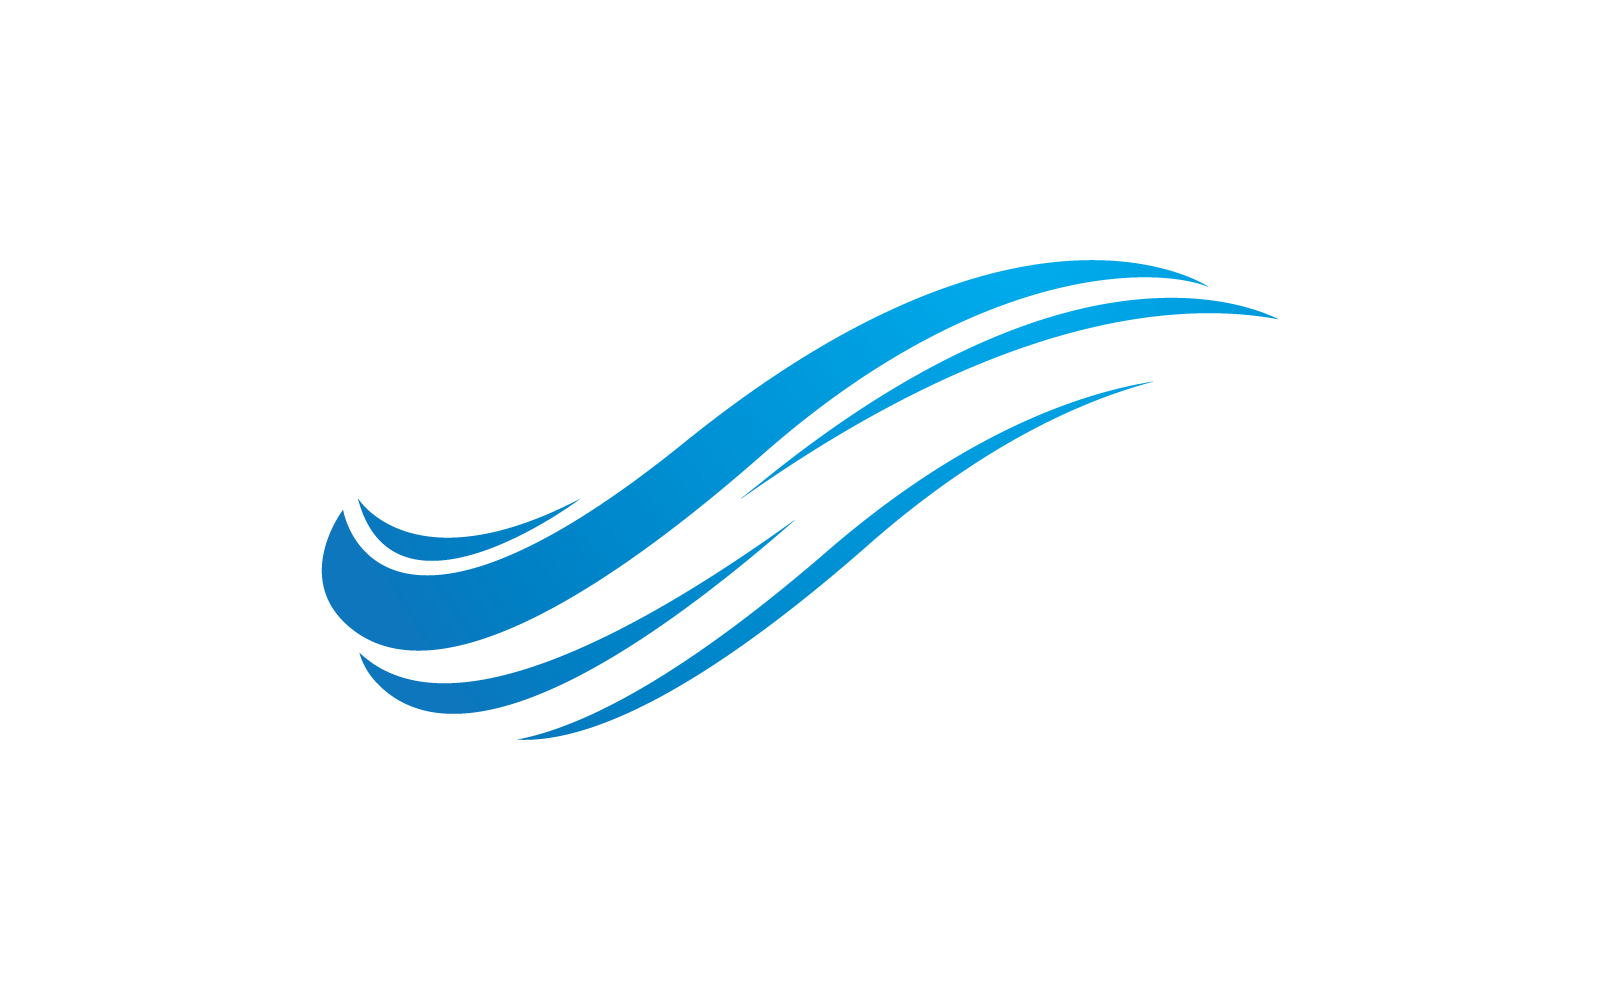 Water Wave logo vector design Logo Template